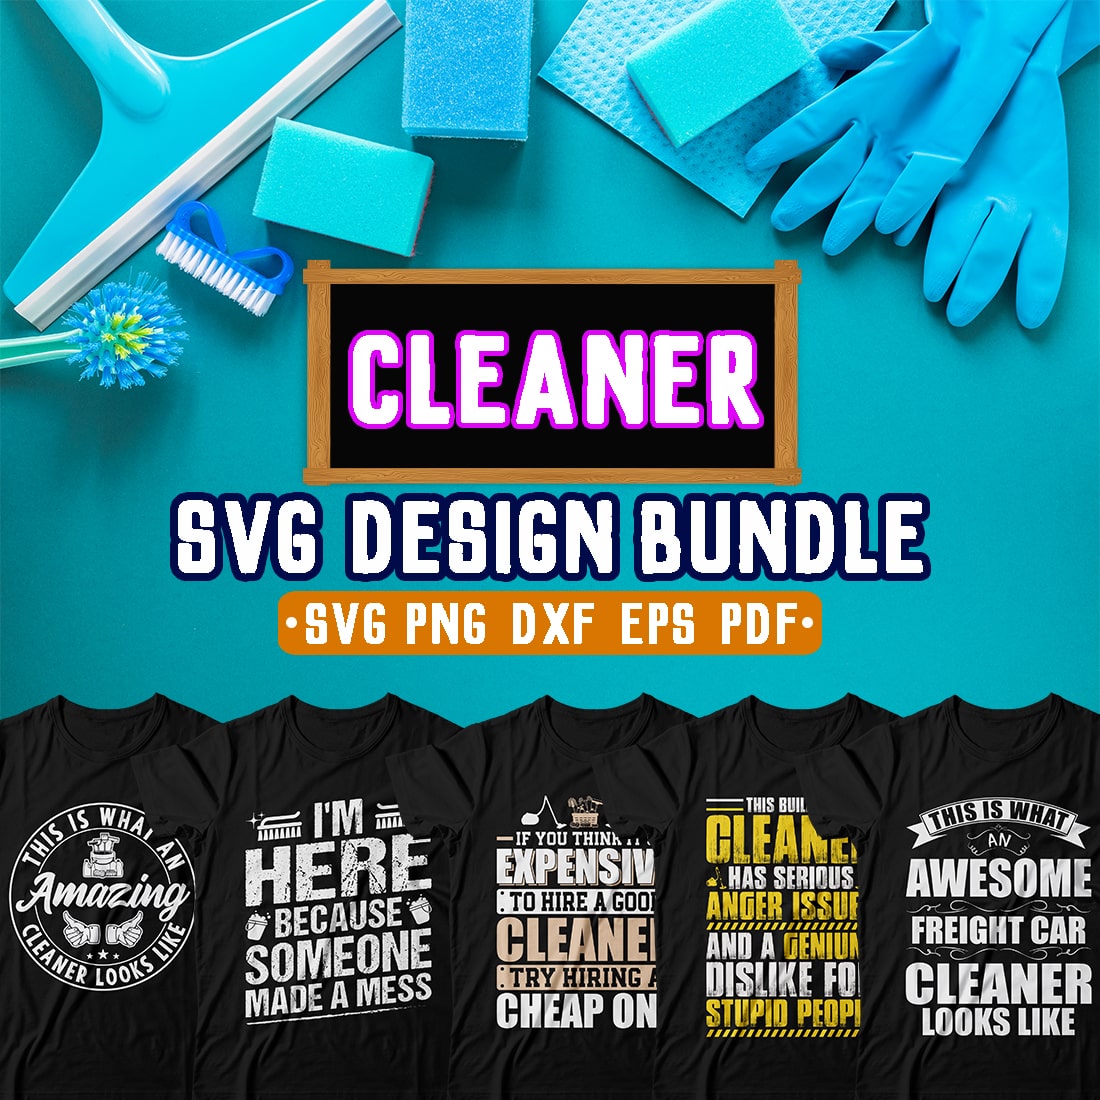 Cleaner SVG Design Bundle cover image.